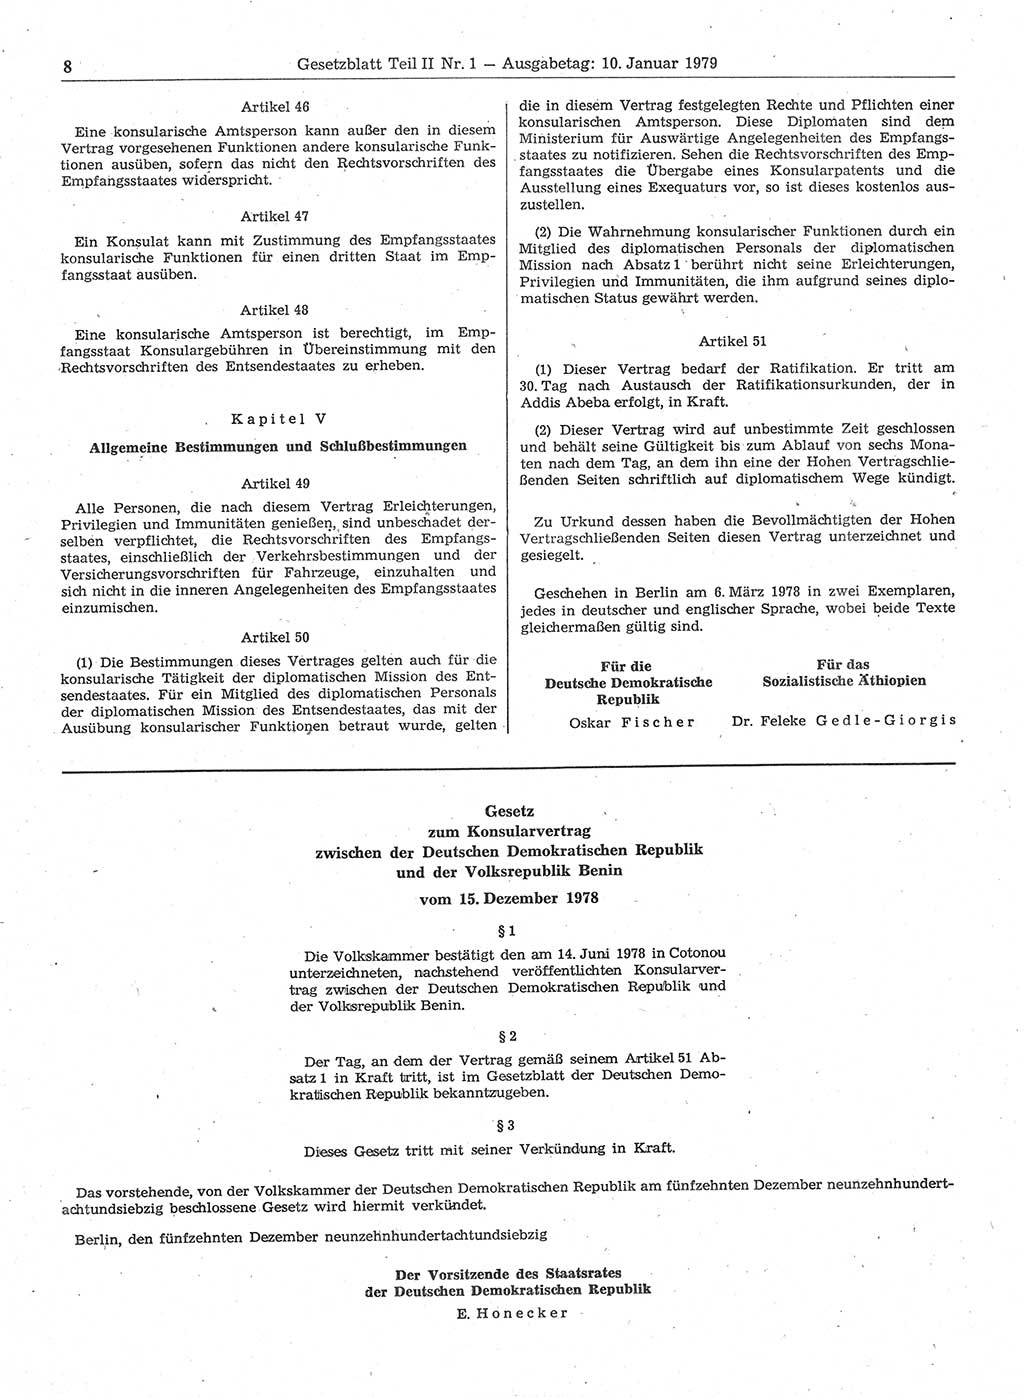 Gesetzblatt (GBl.) der Deutschen Demokratischen Republik (DDR) Teil ⅠⅠ 1979, Seite 8 (GBl. DDR ⅠⅠ 1979, S. 8)